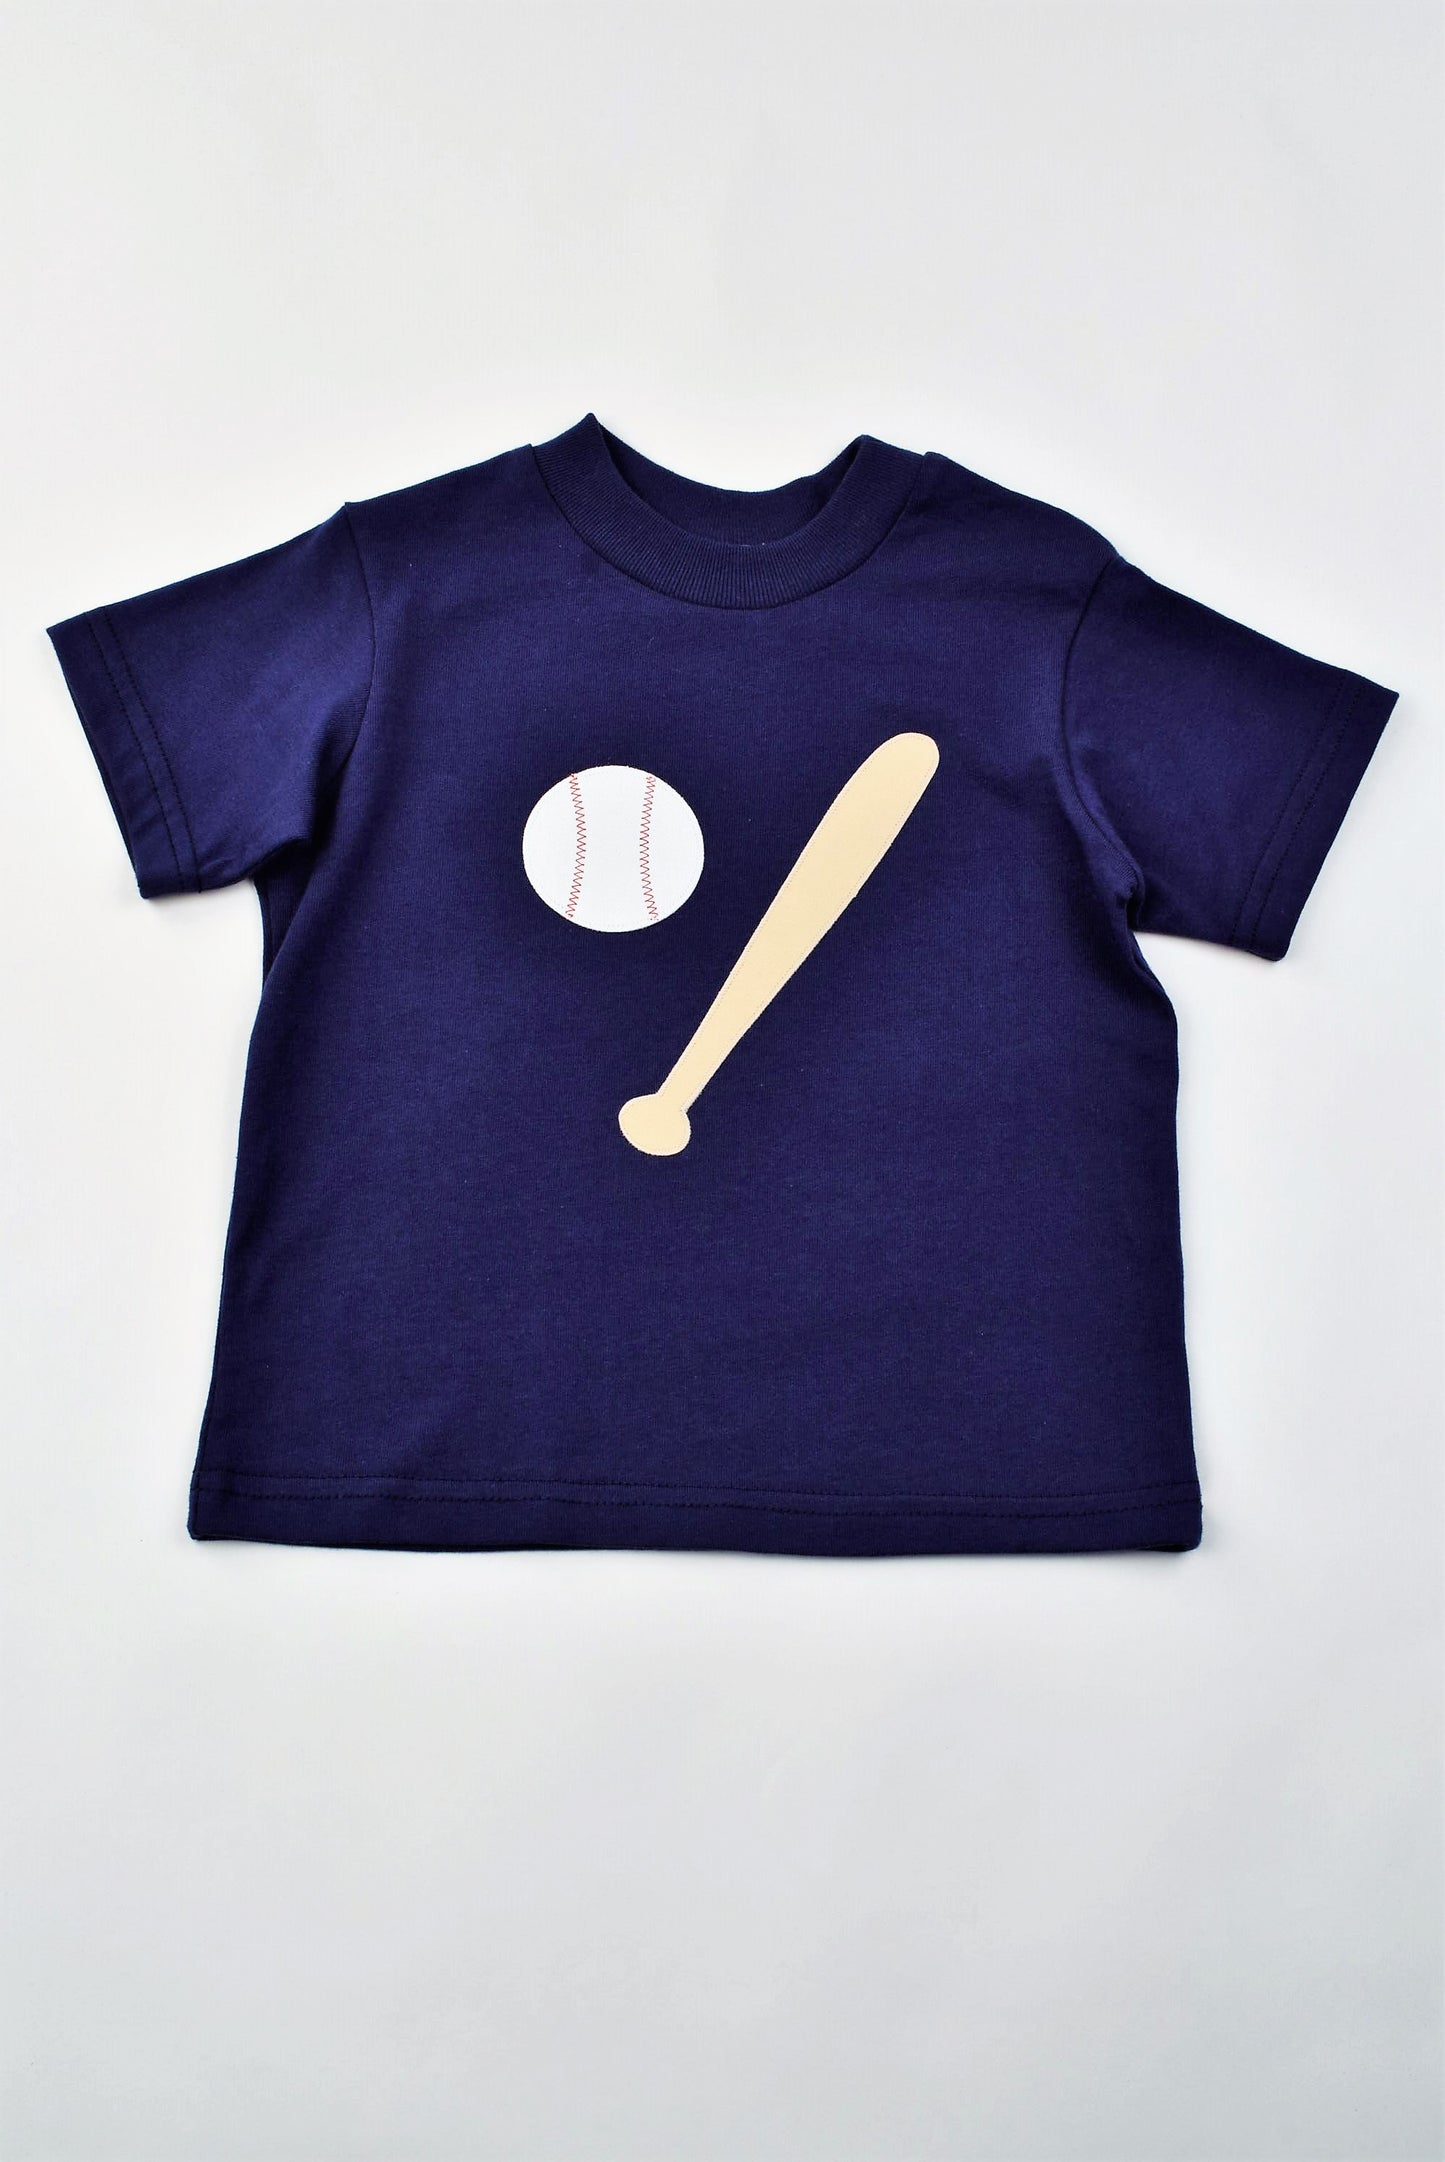 Baseball Shirt and Short Set